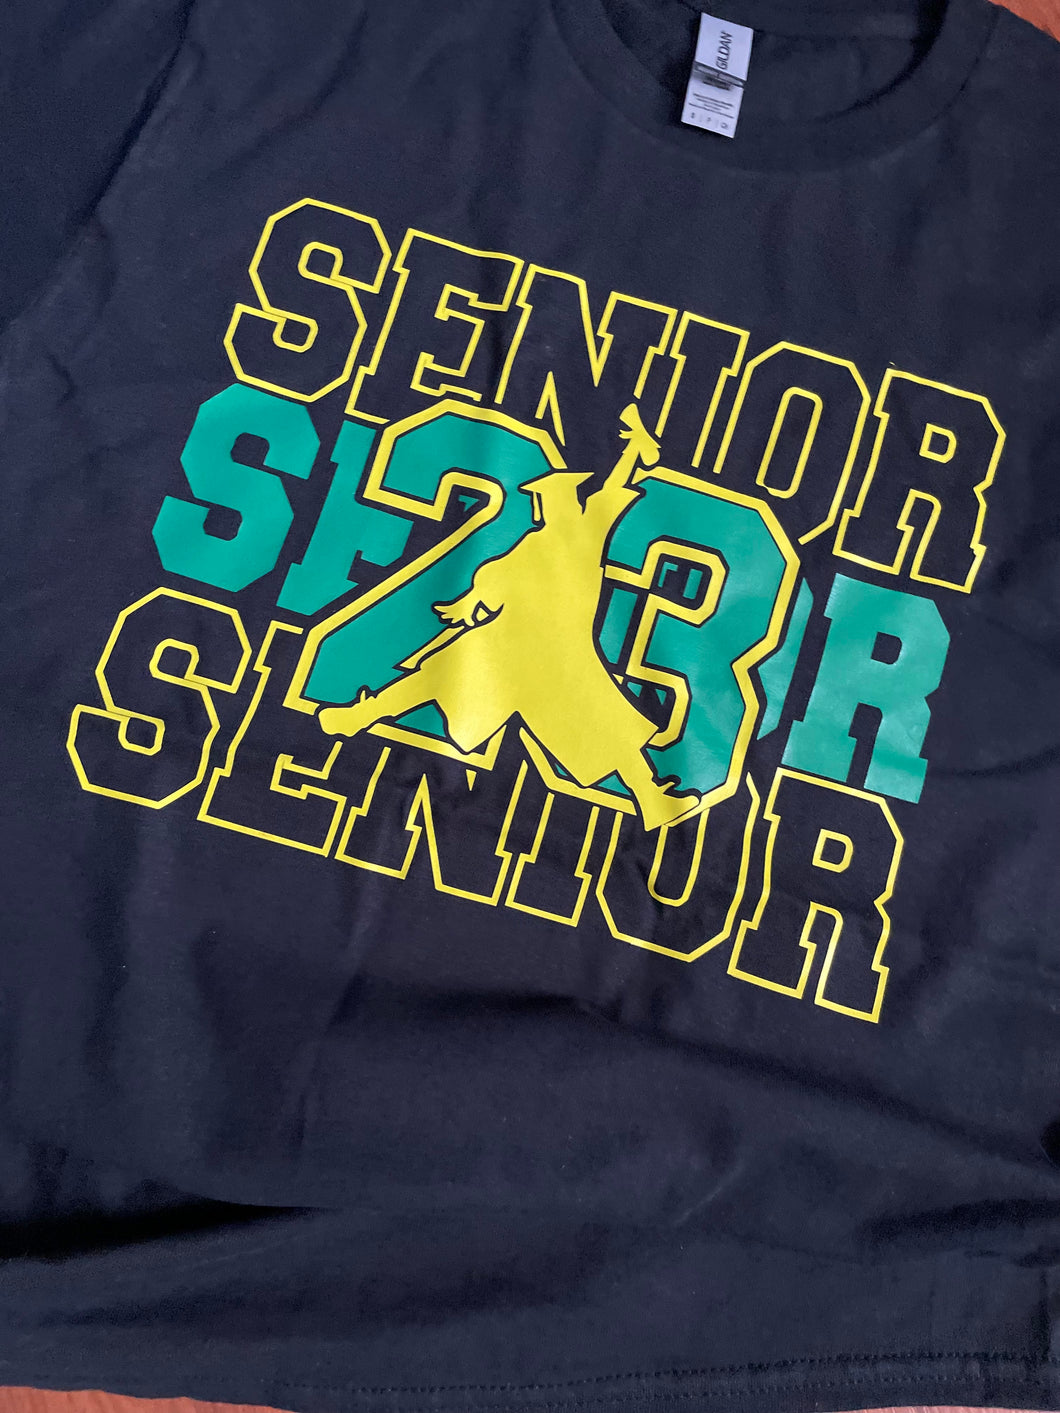 Seniorx3 PT Shirt